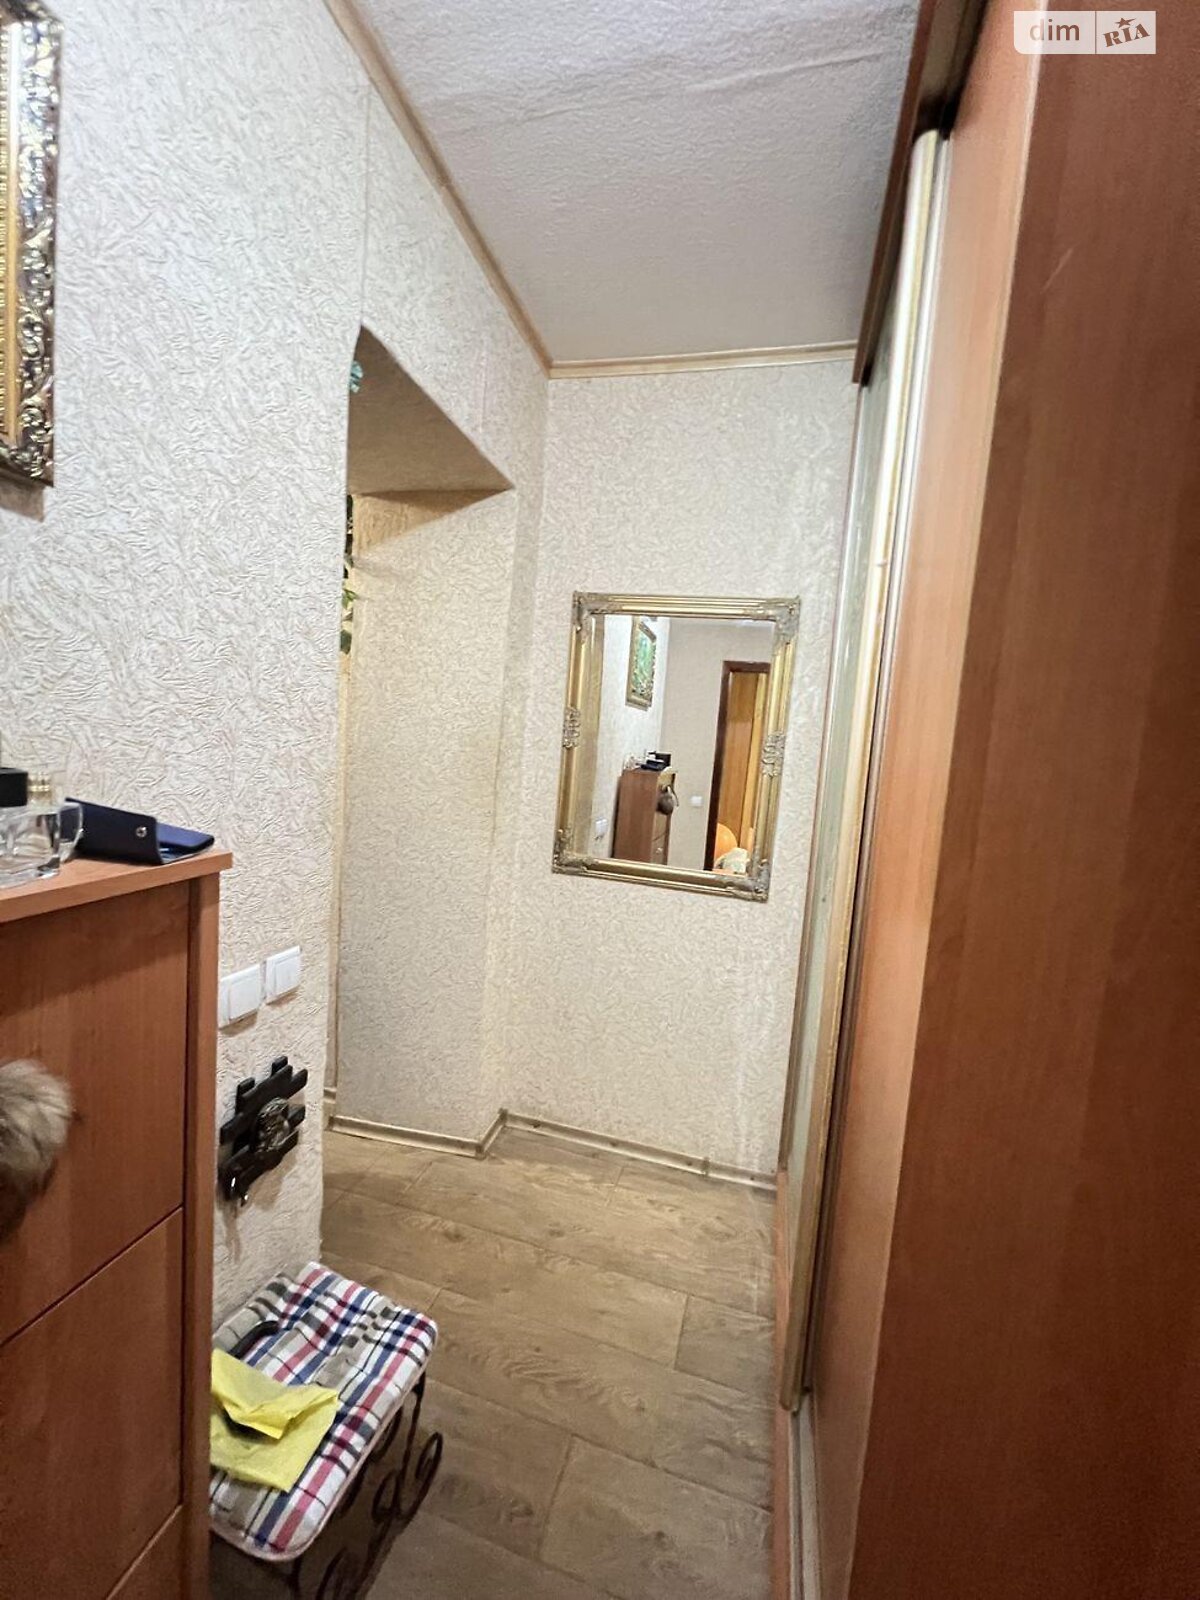 Кімната в Харкові на вул. Краснодарська 171В в районі 627-ий мікрорайон на продаж фото 1